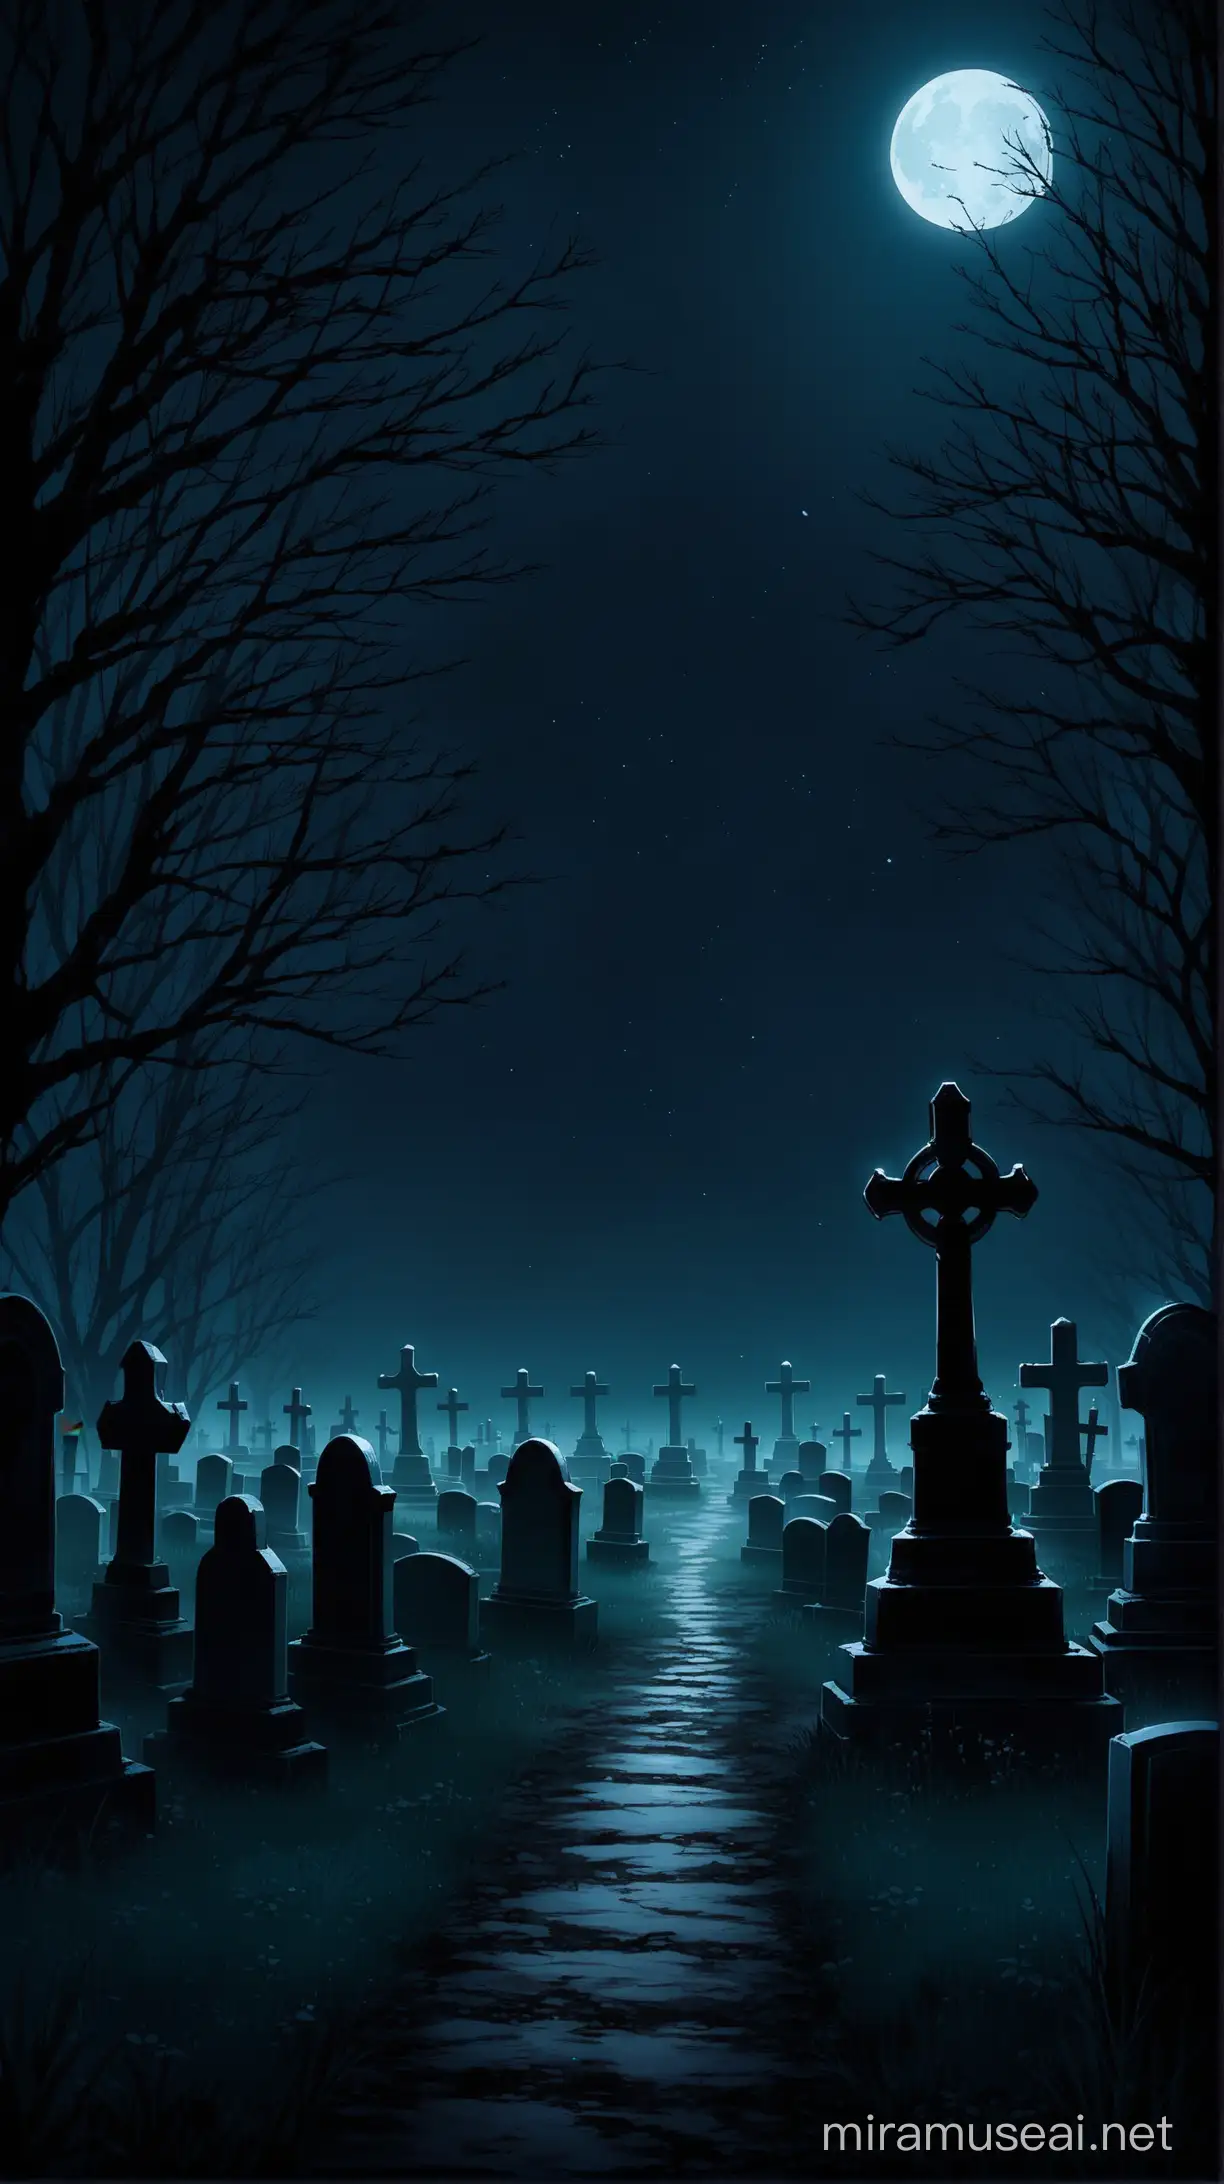 Tranquil Moonlit Graveyard at Night